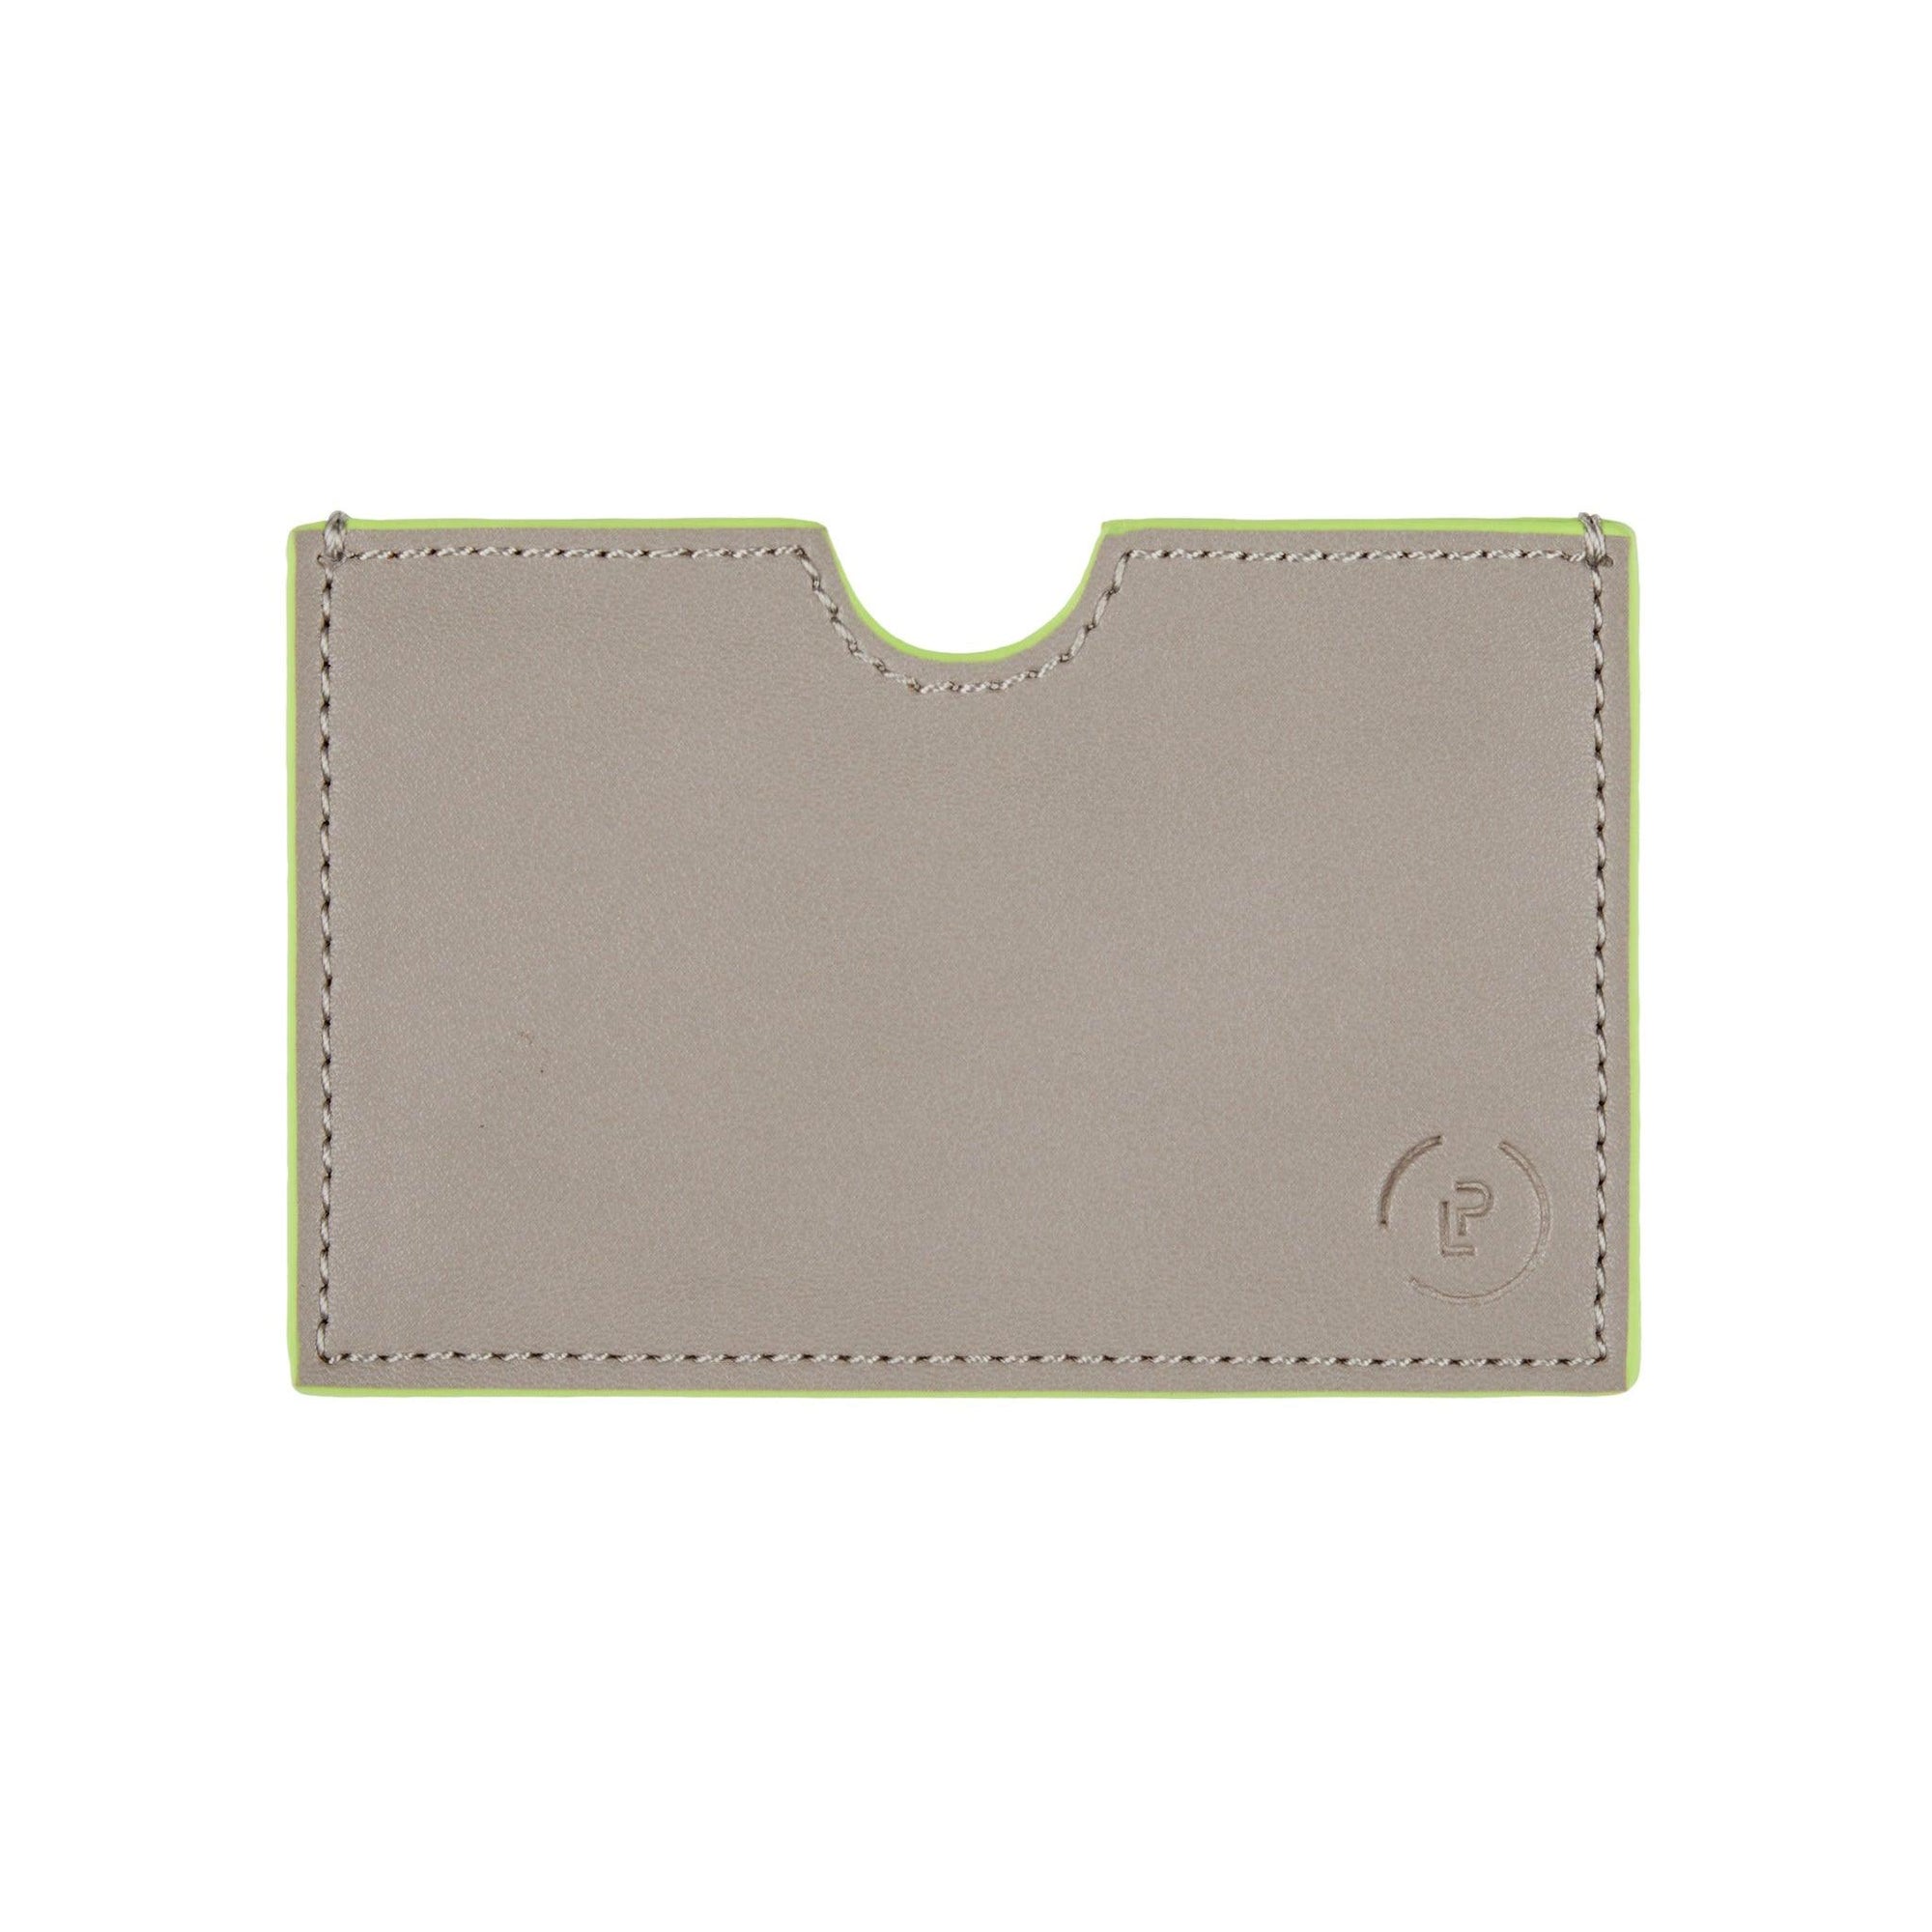 Card Wallet in Walnut Neon Green  colourway 